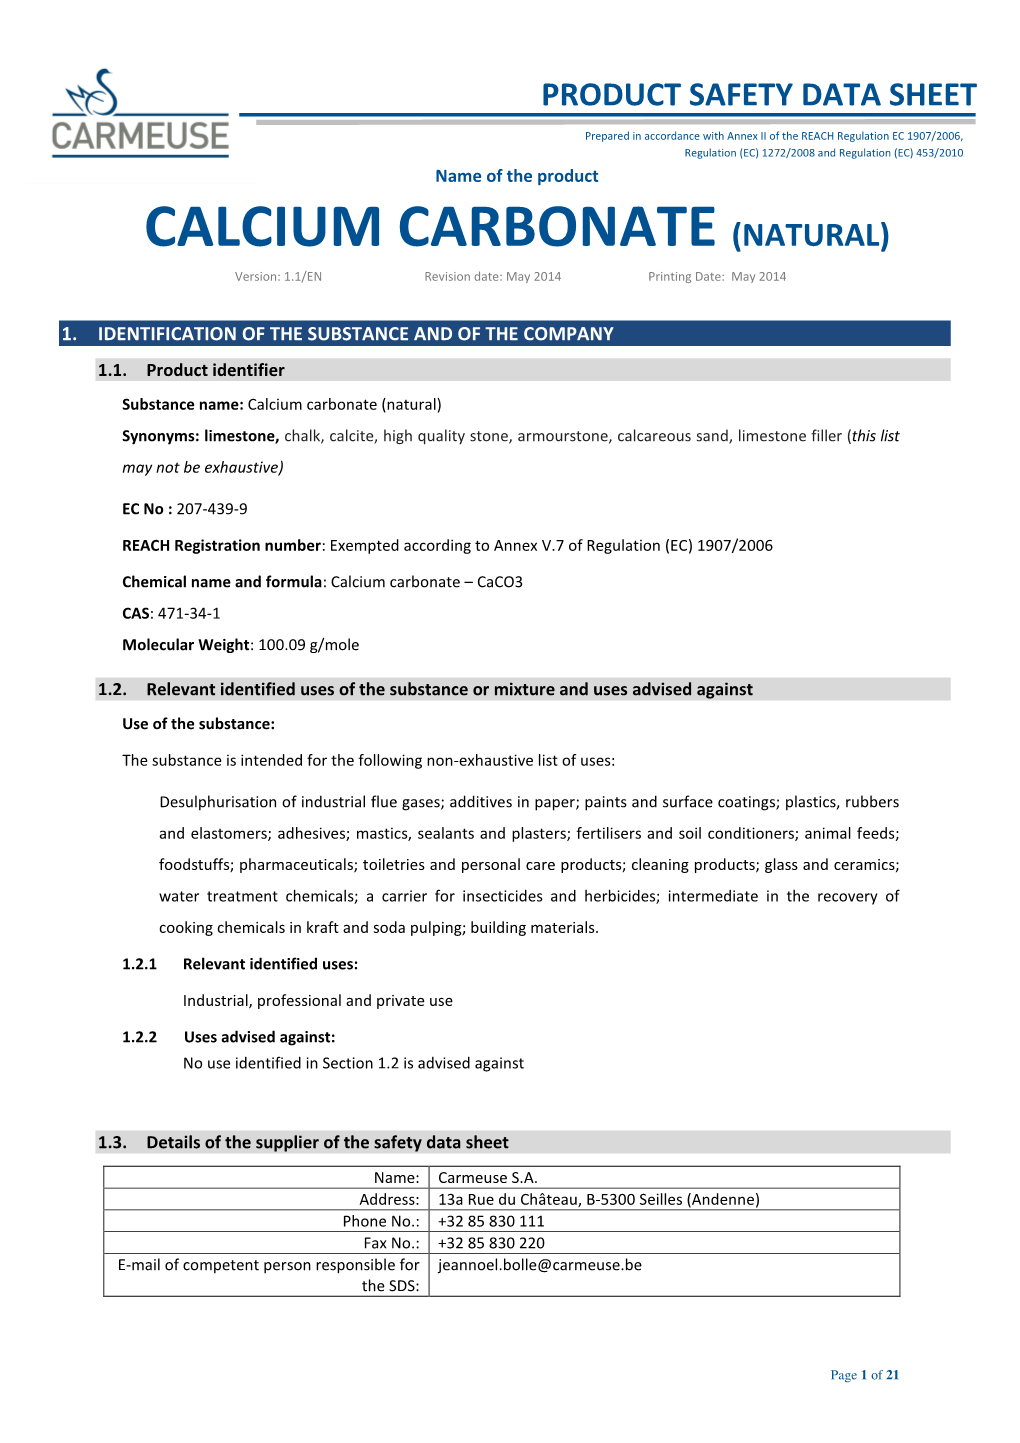 CALCIUM CARBONATE (NATURAL) Version: 1.1/EN Revision Date: May 2014 Printing Date: May 2014